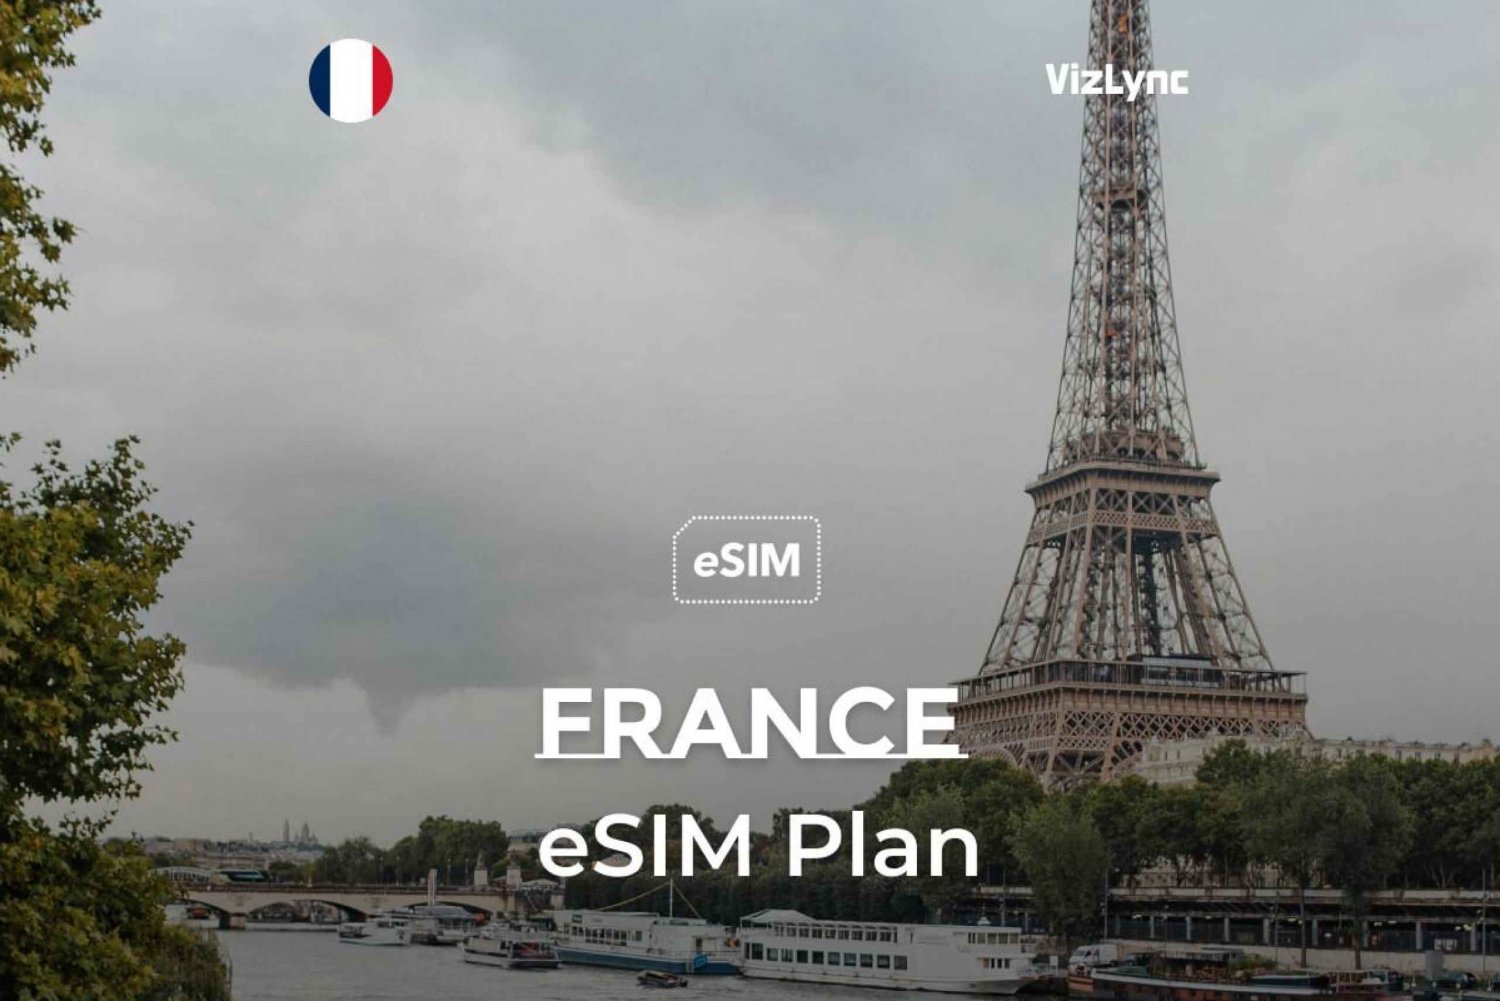 Frankrike Travel eSIM-abonnemang med obegränsade samtal och data i EU